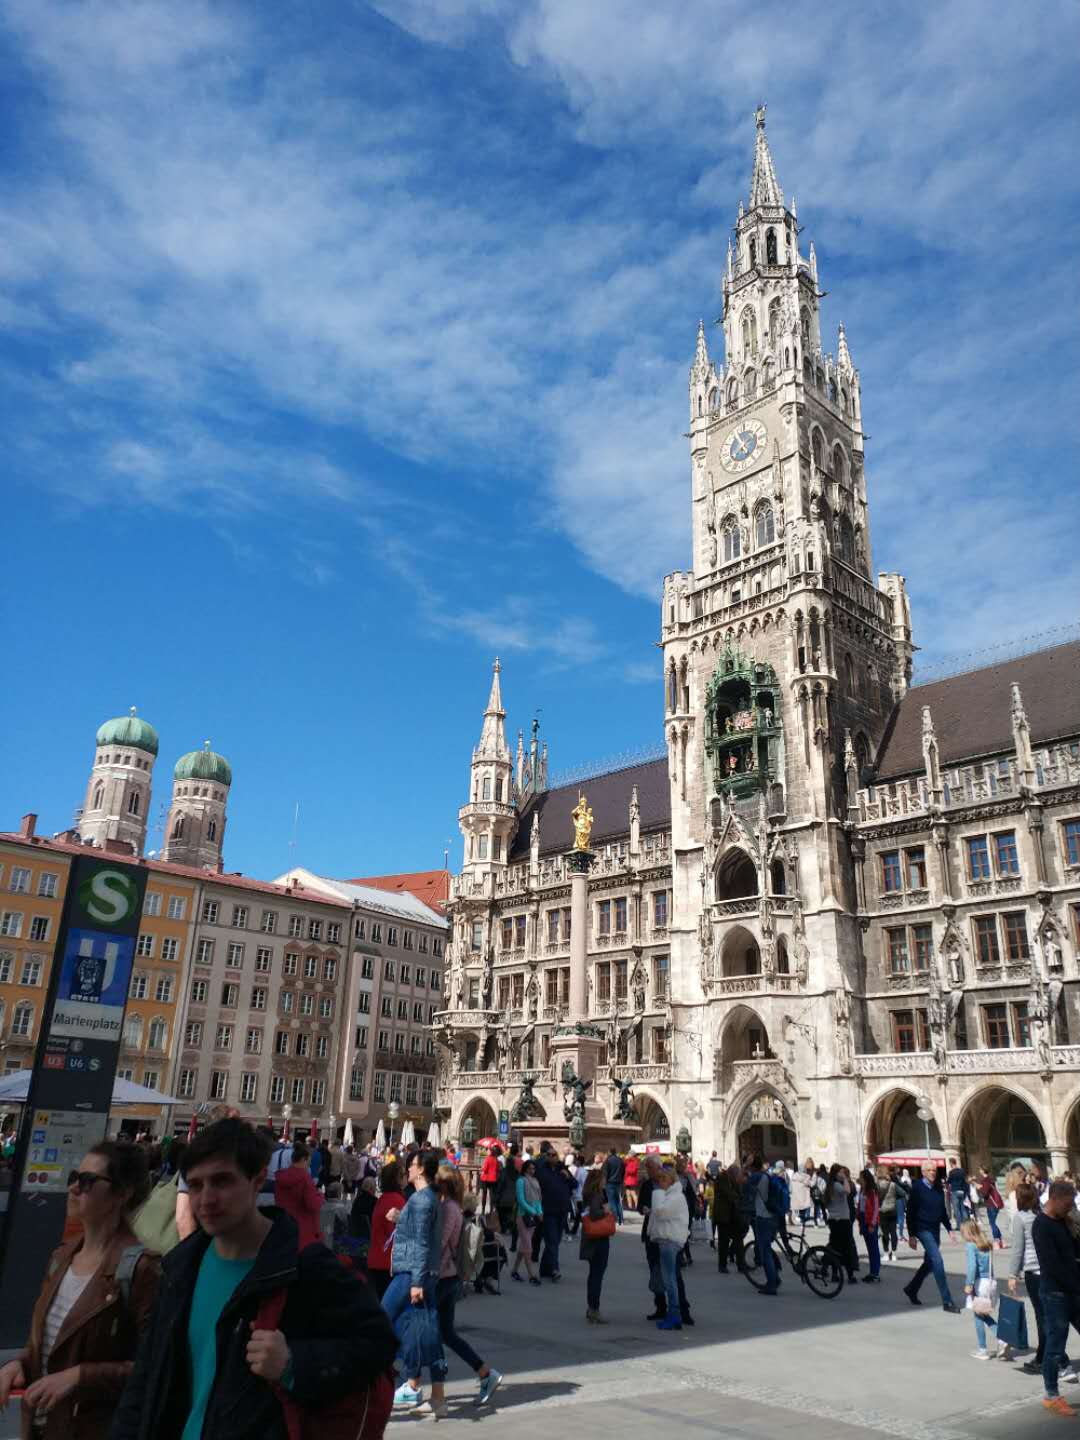 欧洲地区旅游 慕尼黑旅游攻略 《退休了,旅游去》独自闲逛德国慕尼黑